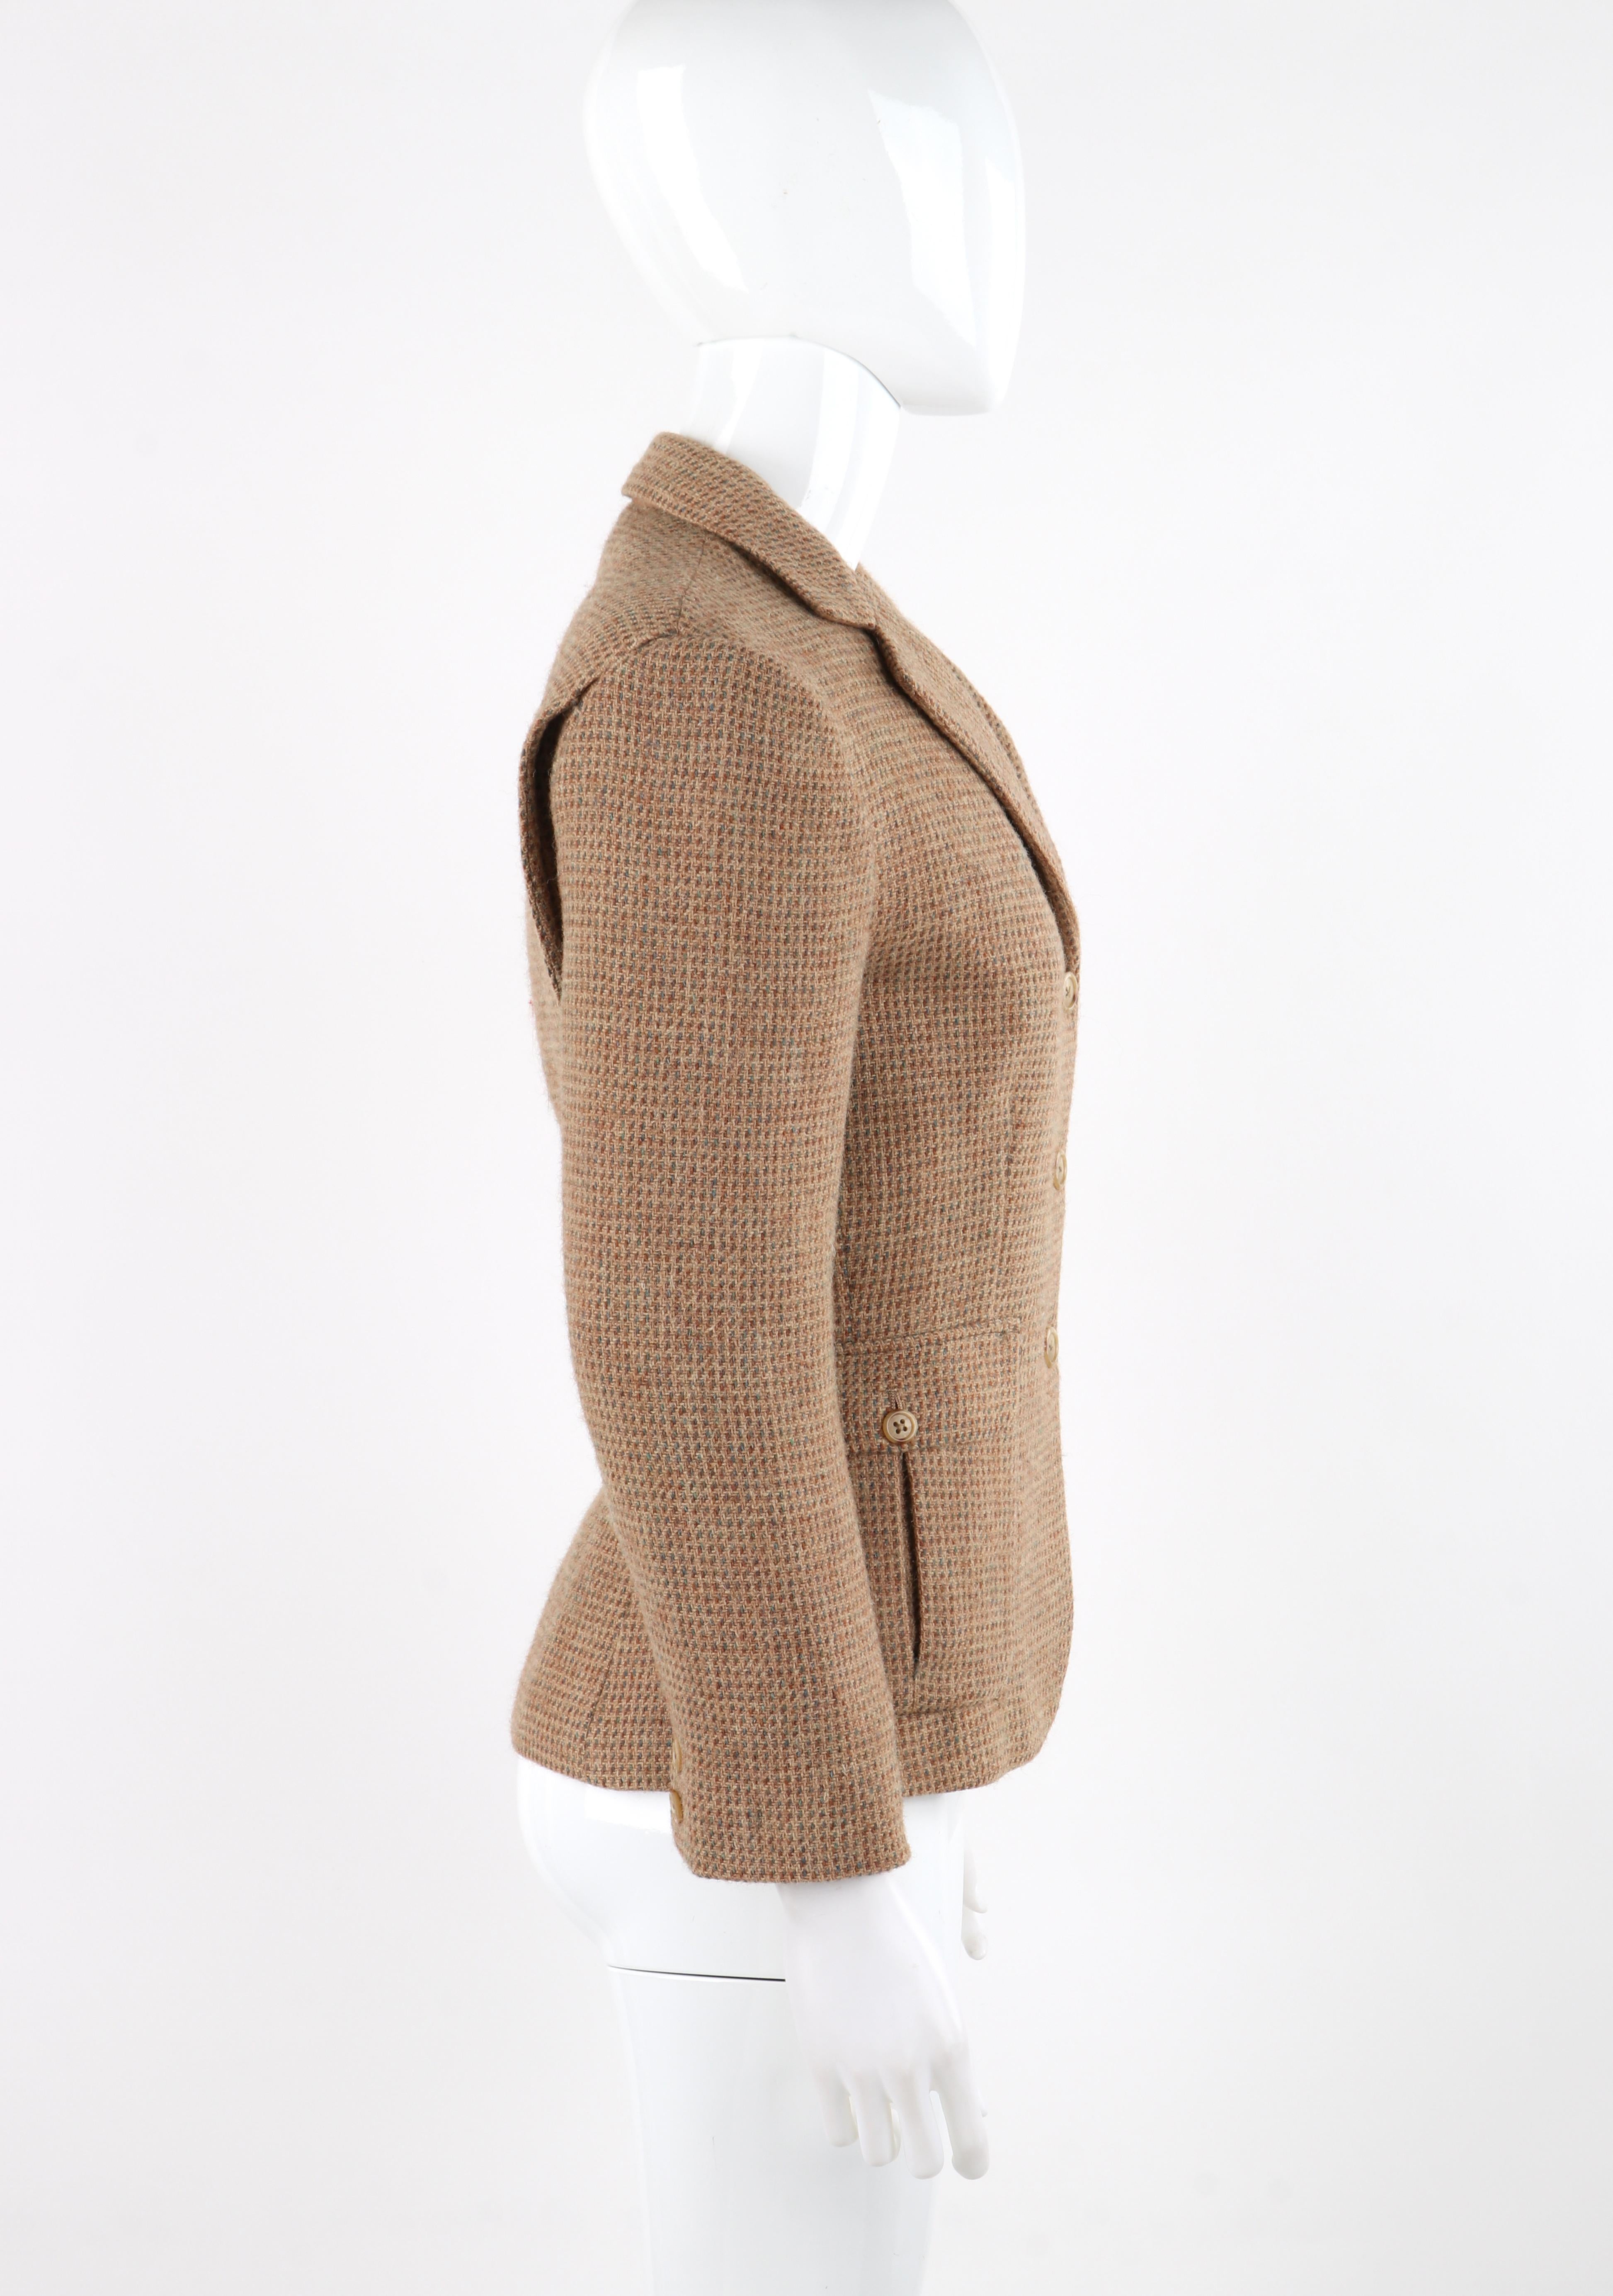 Women's RALPH LAUREN c.1970's Brown Tan Tweed Wool Fitted Button Up Blazer Coat Jacket  For Sale